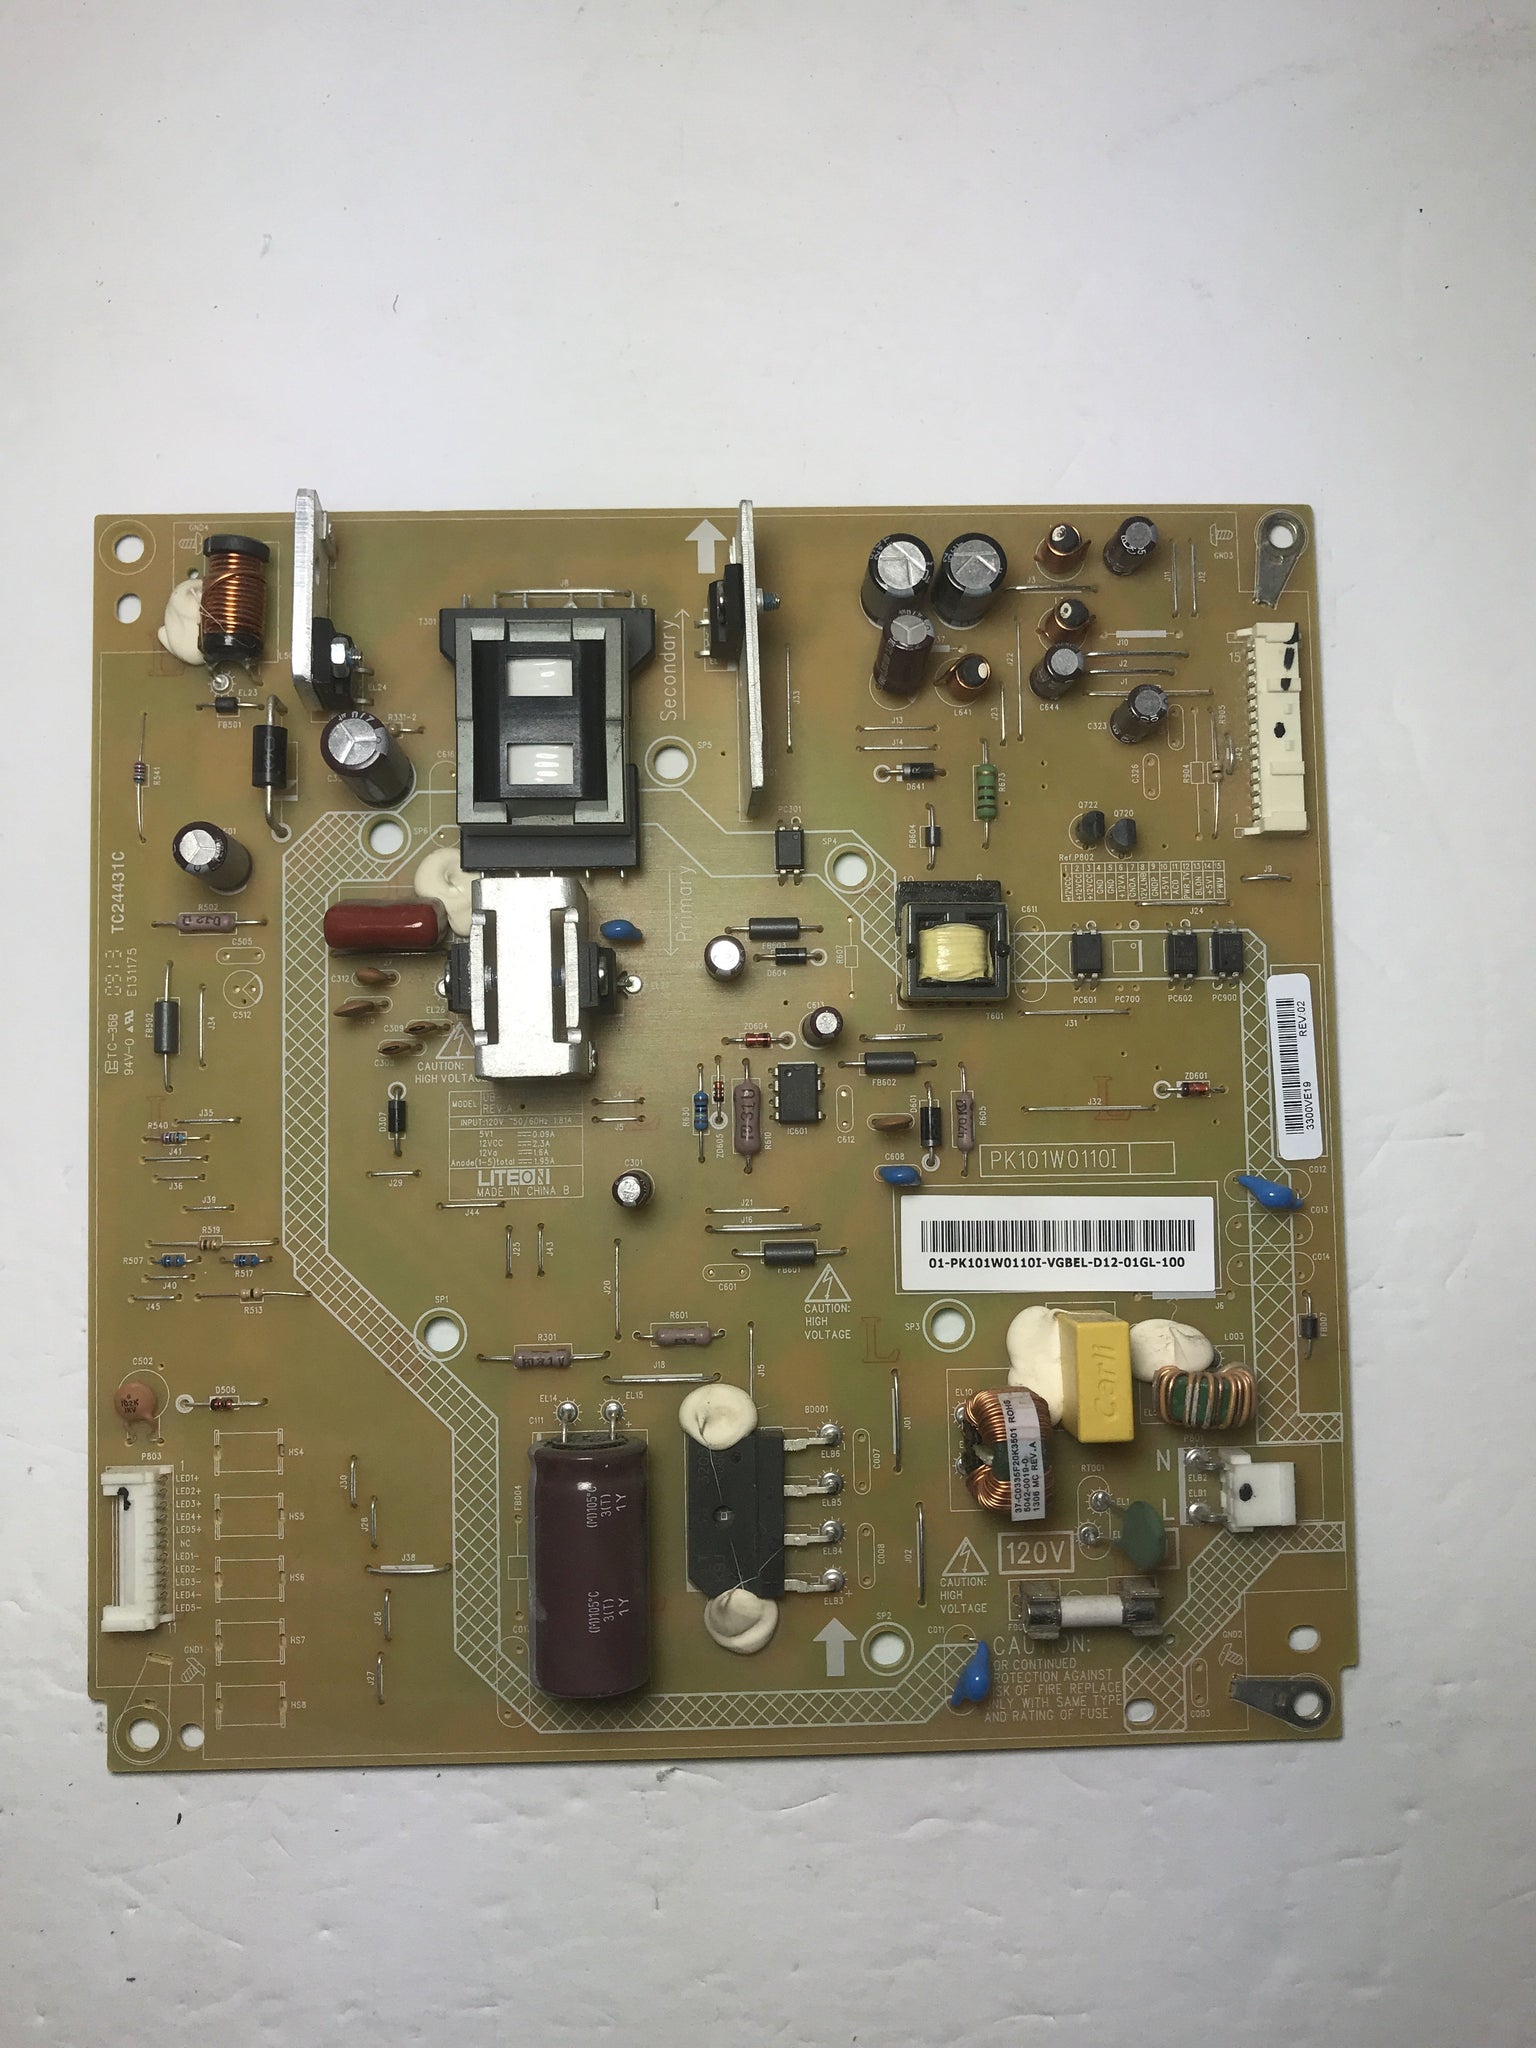 Toshiba PK101W0110I Power Supply/LED Board